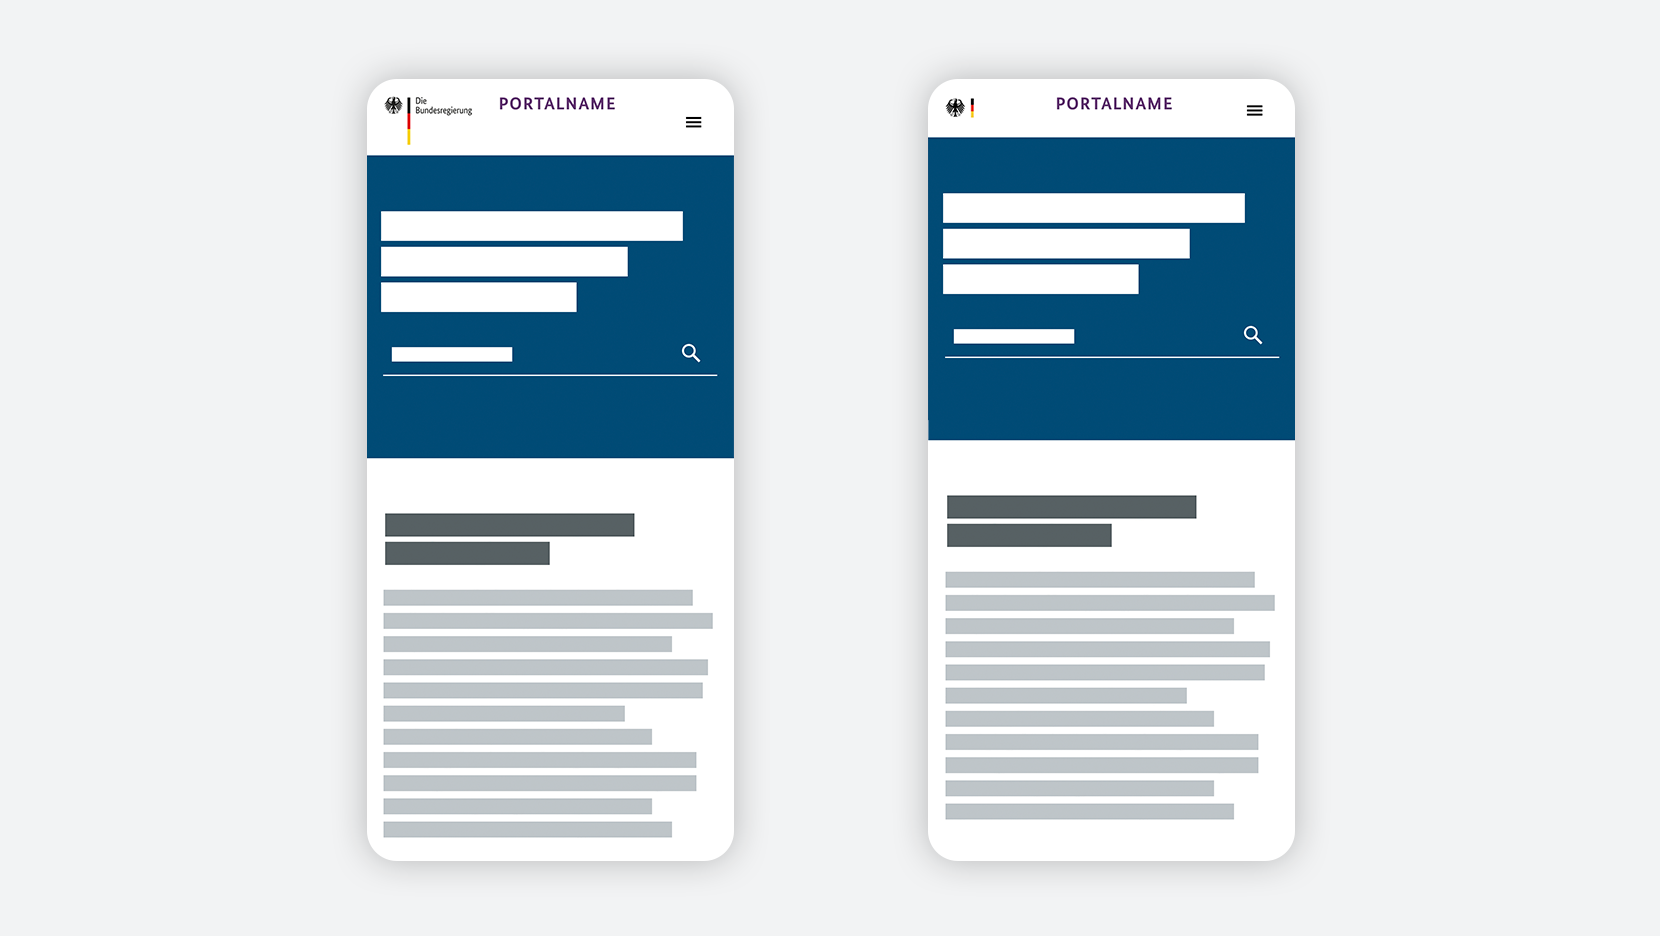 Beispiel mobile Webanwendung, Positionierung nebeneinander, Bildwortmarke ändert sich zur Minimalversion mit Scrollverhalten (rechts). 